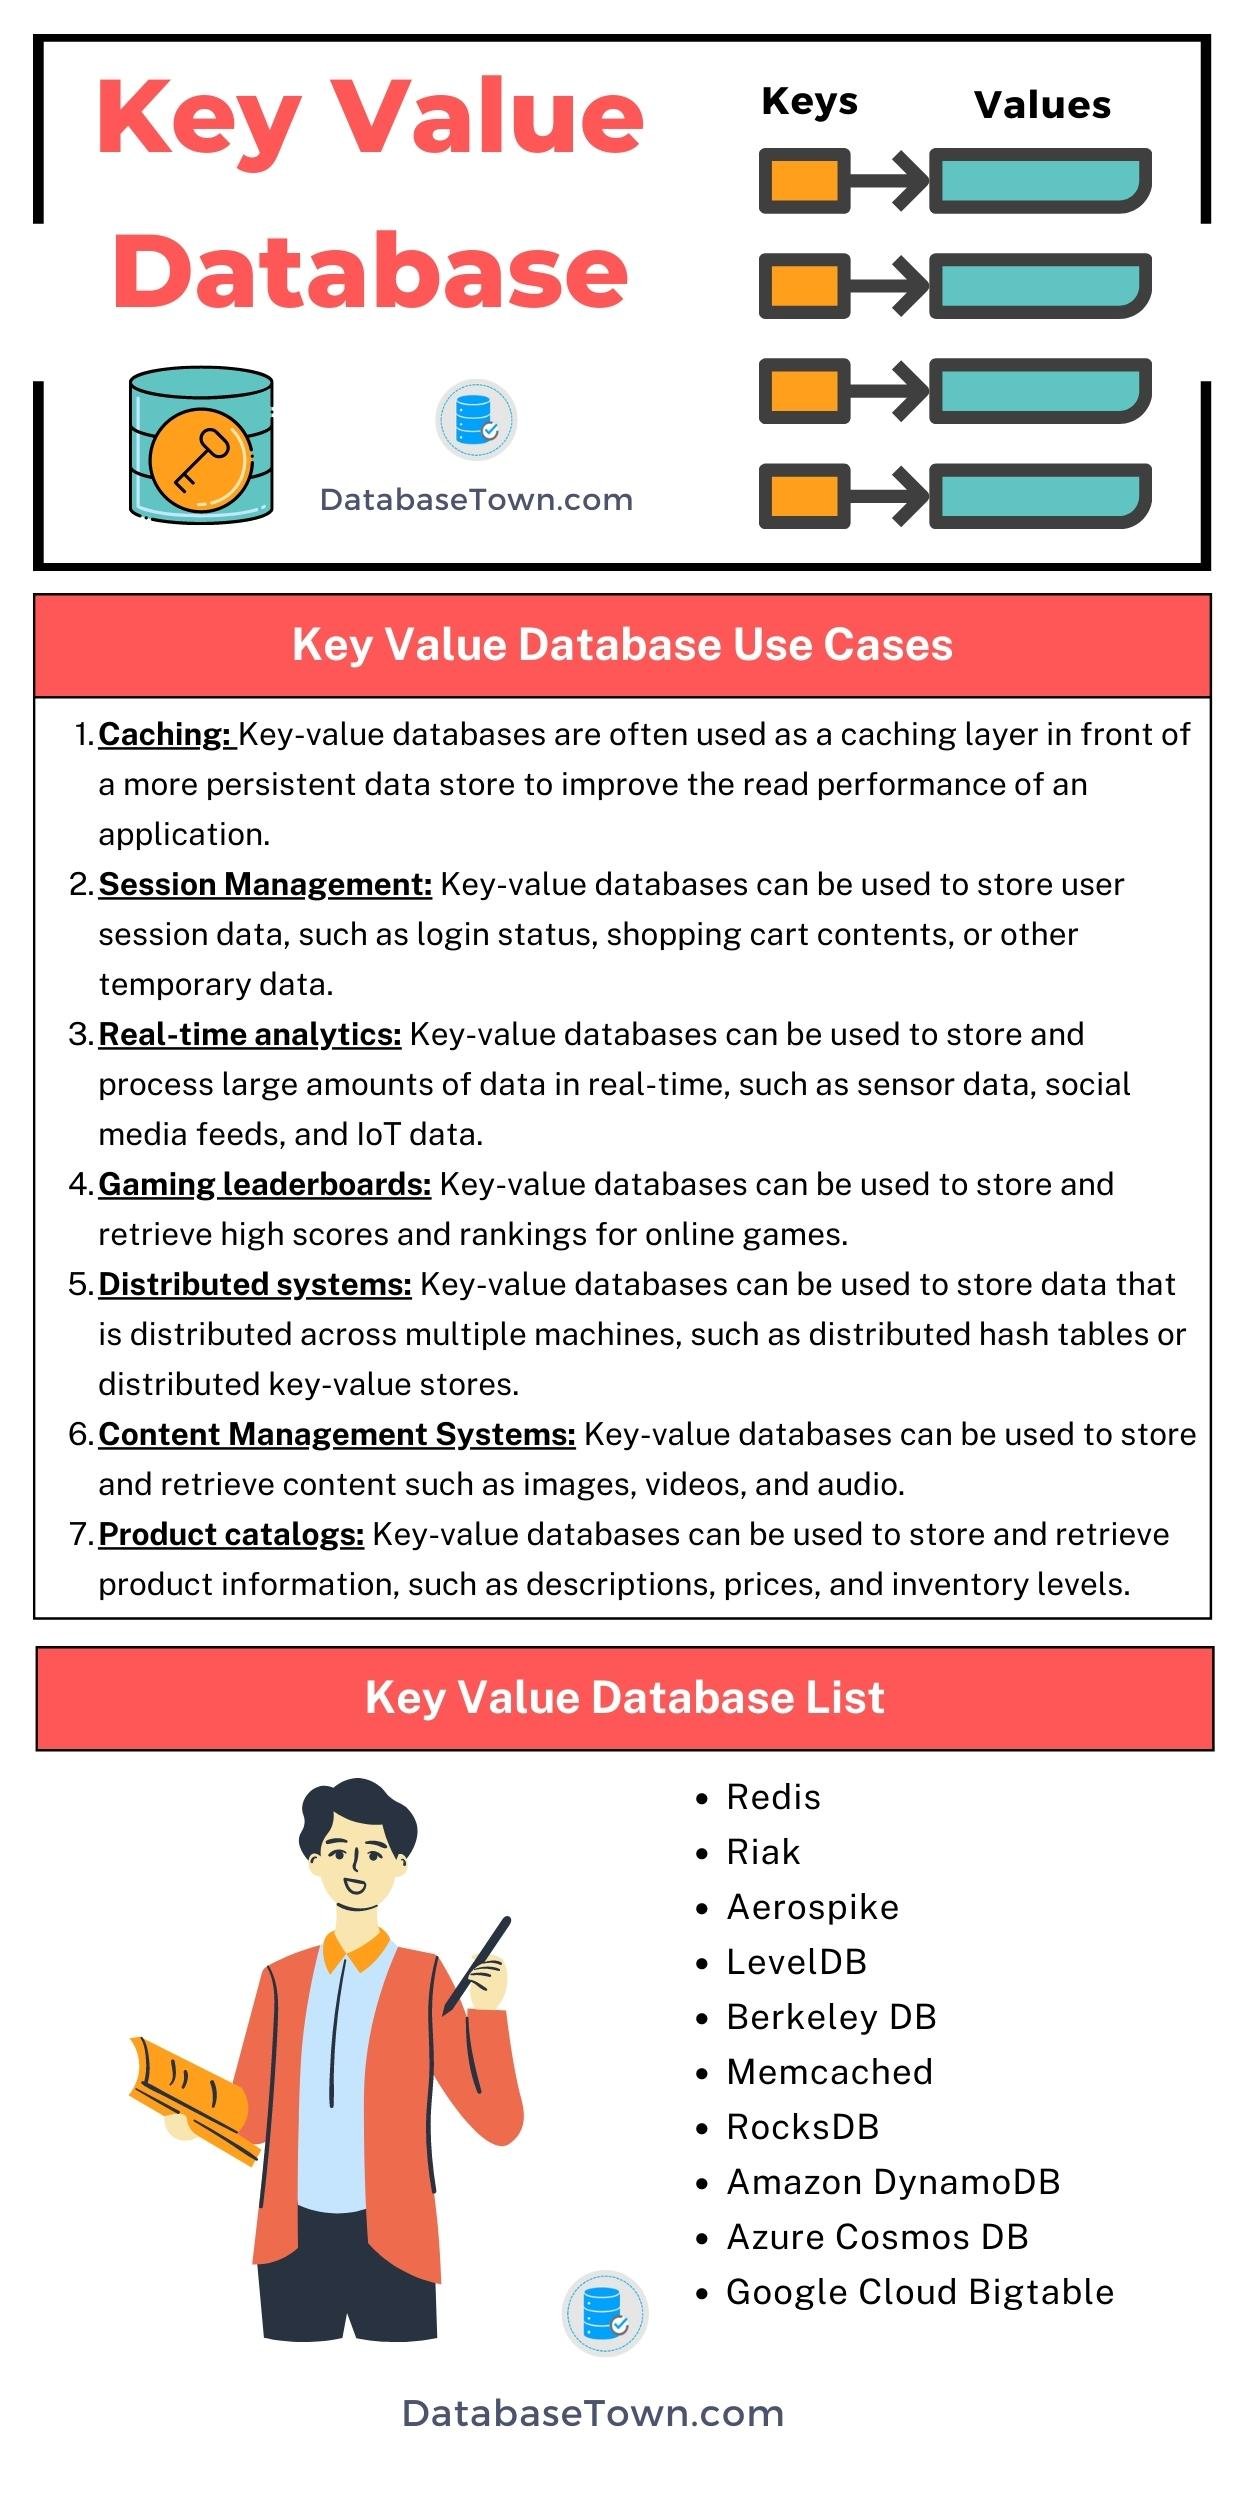 Key-Value Database (Use Cases, List)